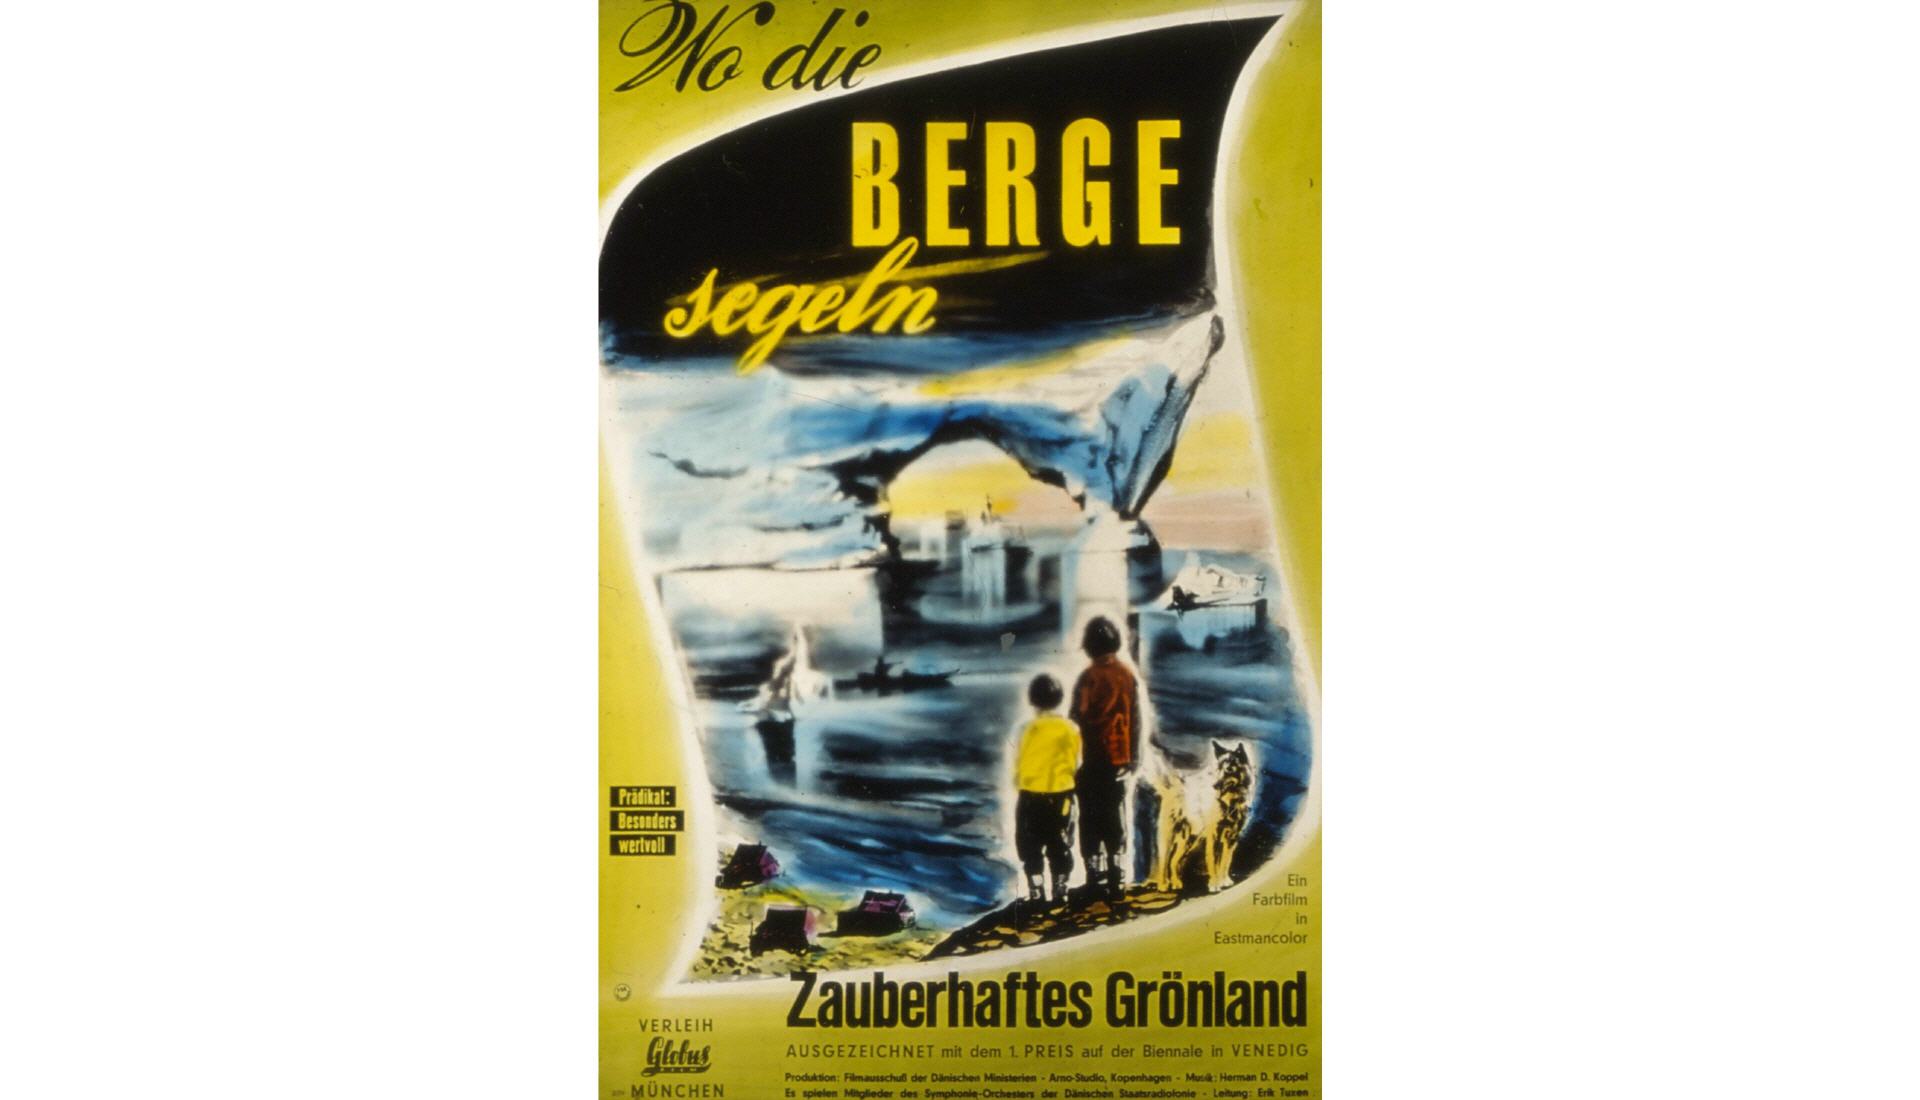 WO DIE BERGE SEGELN (1955)